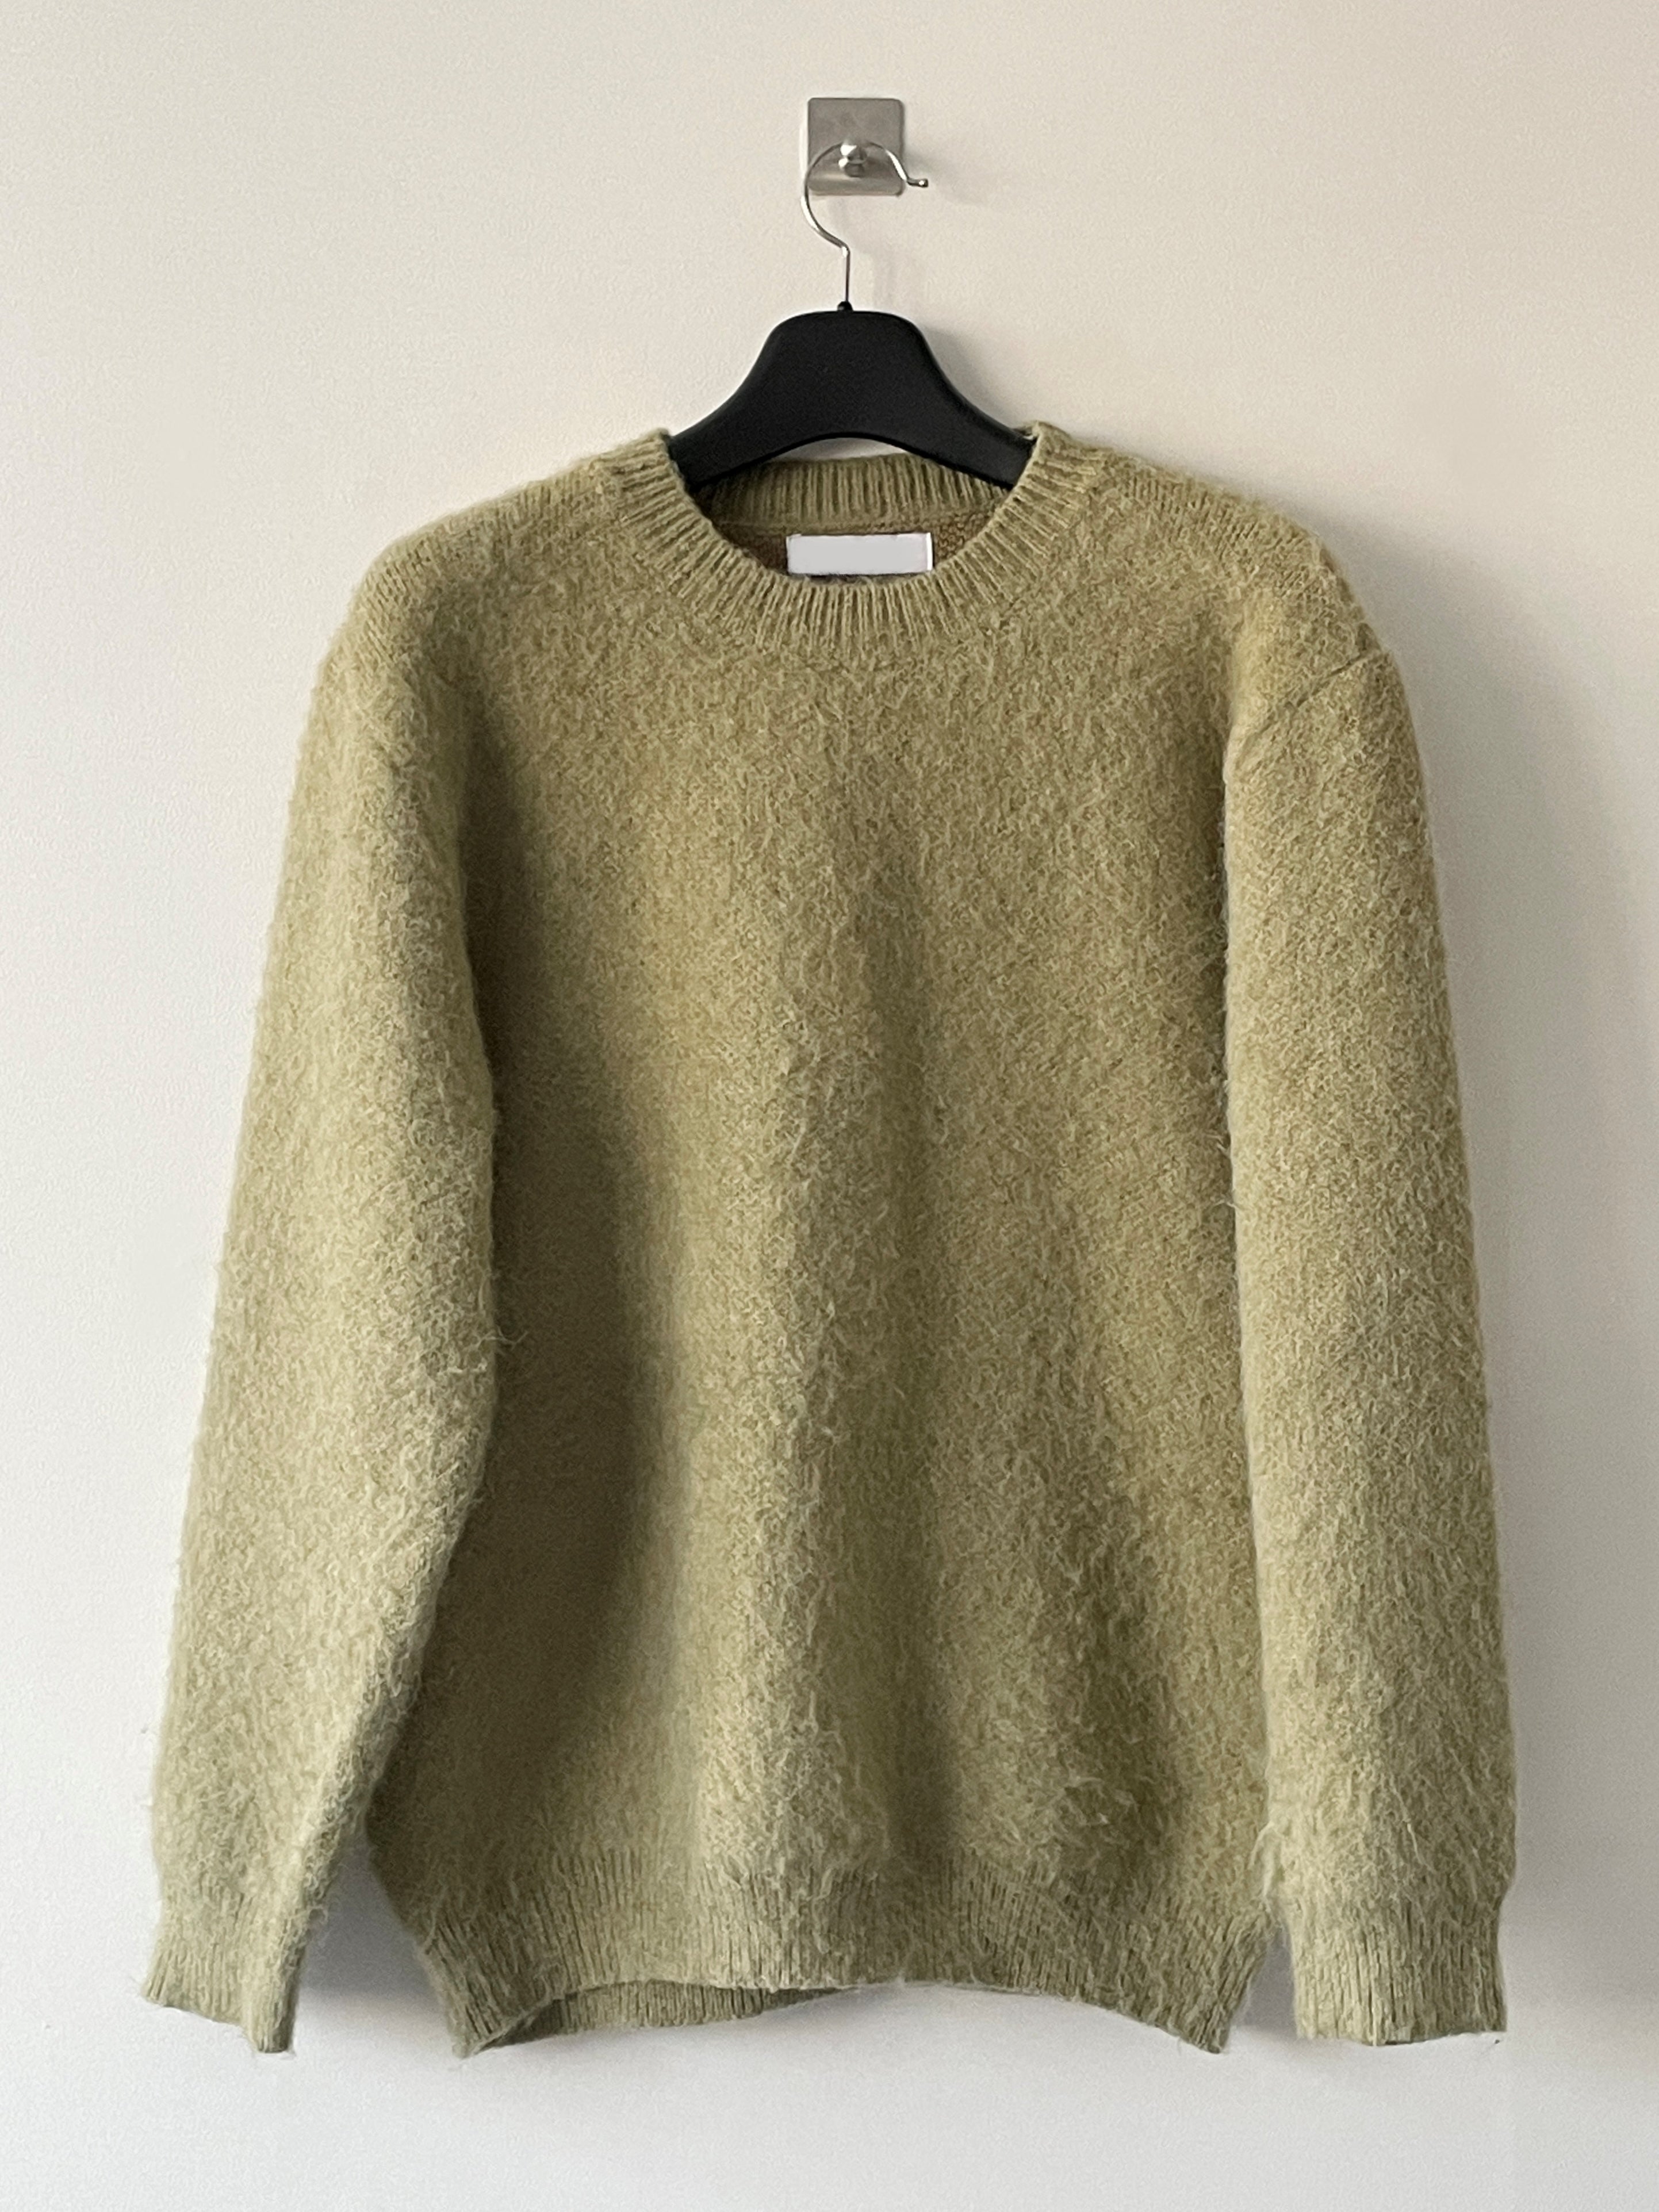 Soft mohair knit